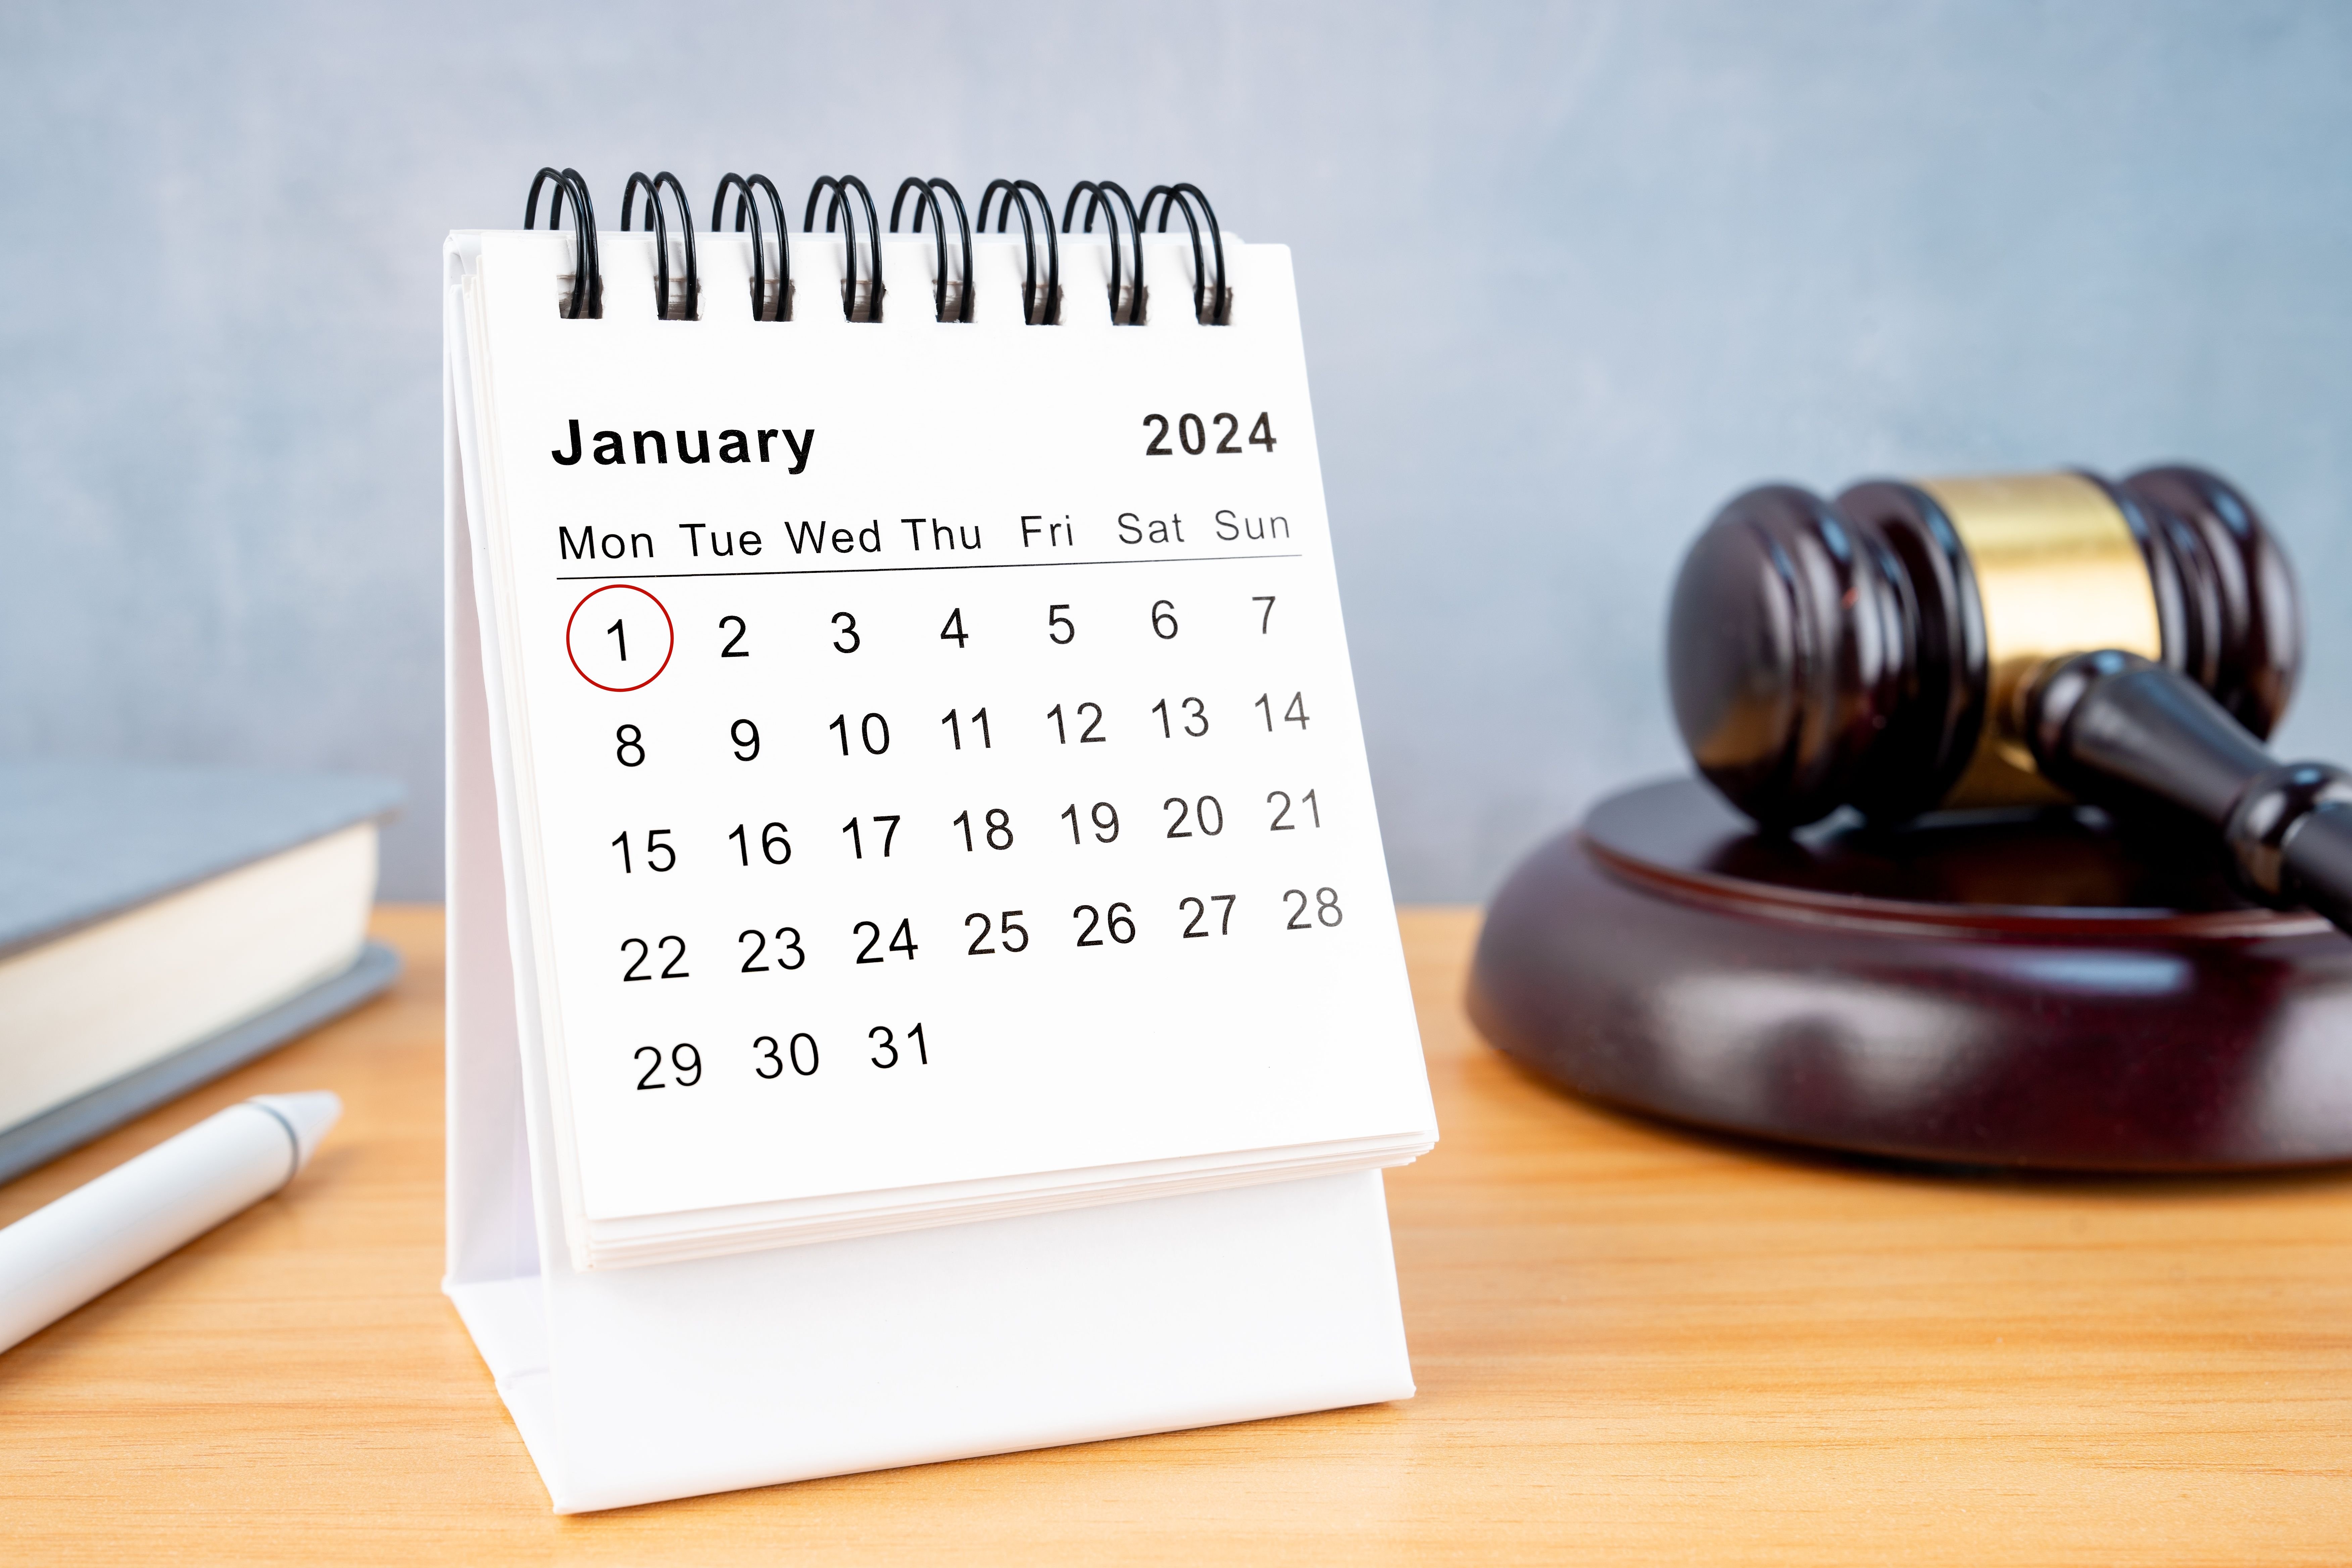 Fra og med den 1. januar 2024 afskaffes Store Bededag som helligdag og bliver en almindelig arbejdsdag.